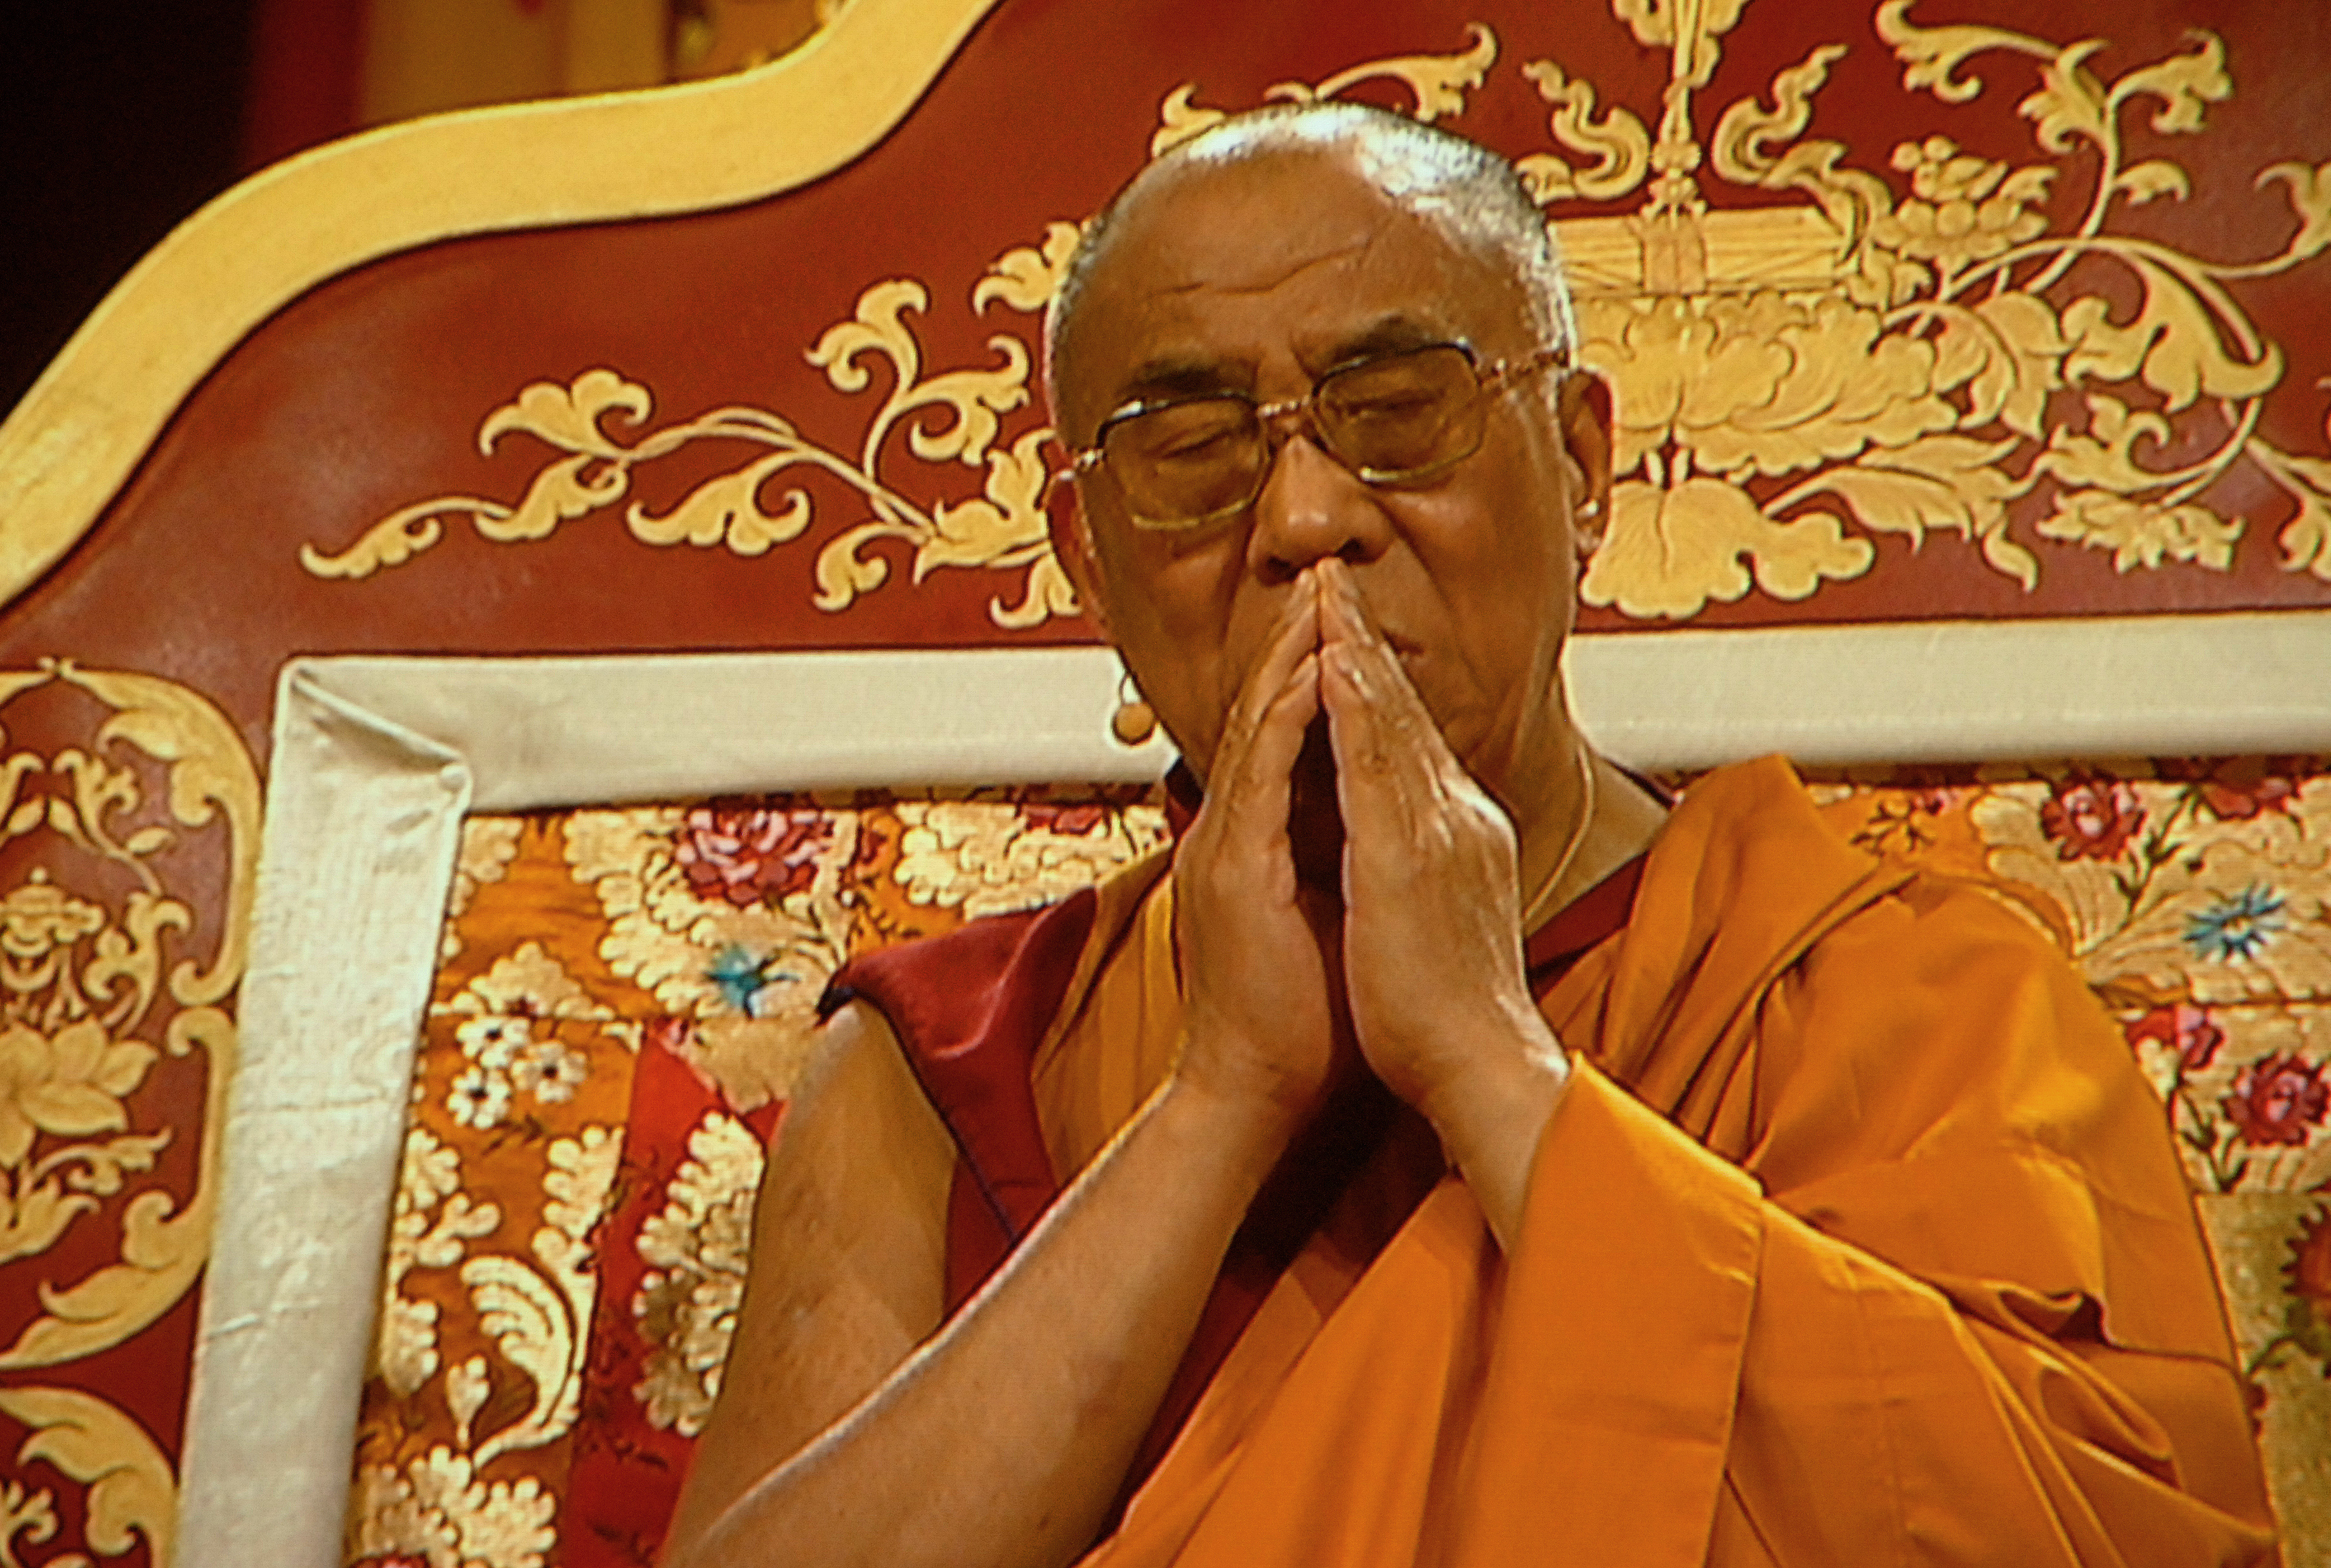 Sua Santità il Dalai Lama: "Un praticante che abbia raggiunto una certa comprensione della vastità e della profondità delle dottrine buddhiste raccolte ed esposte da antichi maestri buddhisti indiani quali Nagarjuna, Asanga, Vasubandhu, Dharmakirti ed altri ancora, rispetterà immediatamente ogni lignaggio del Dharma per il suo proprio valore. Anche noi dovremmo cercare di seguire questo tipo di approccio eclettico messo in pratica da innumerevoli maestri del passato."